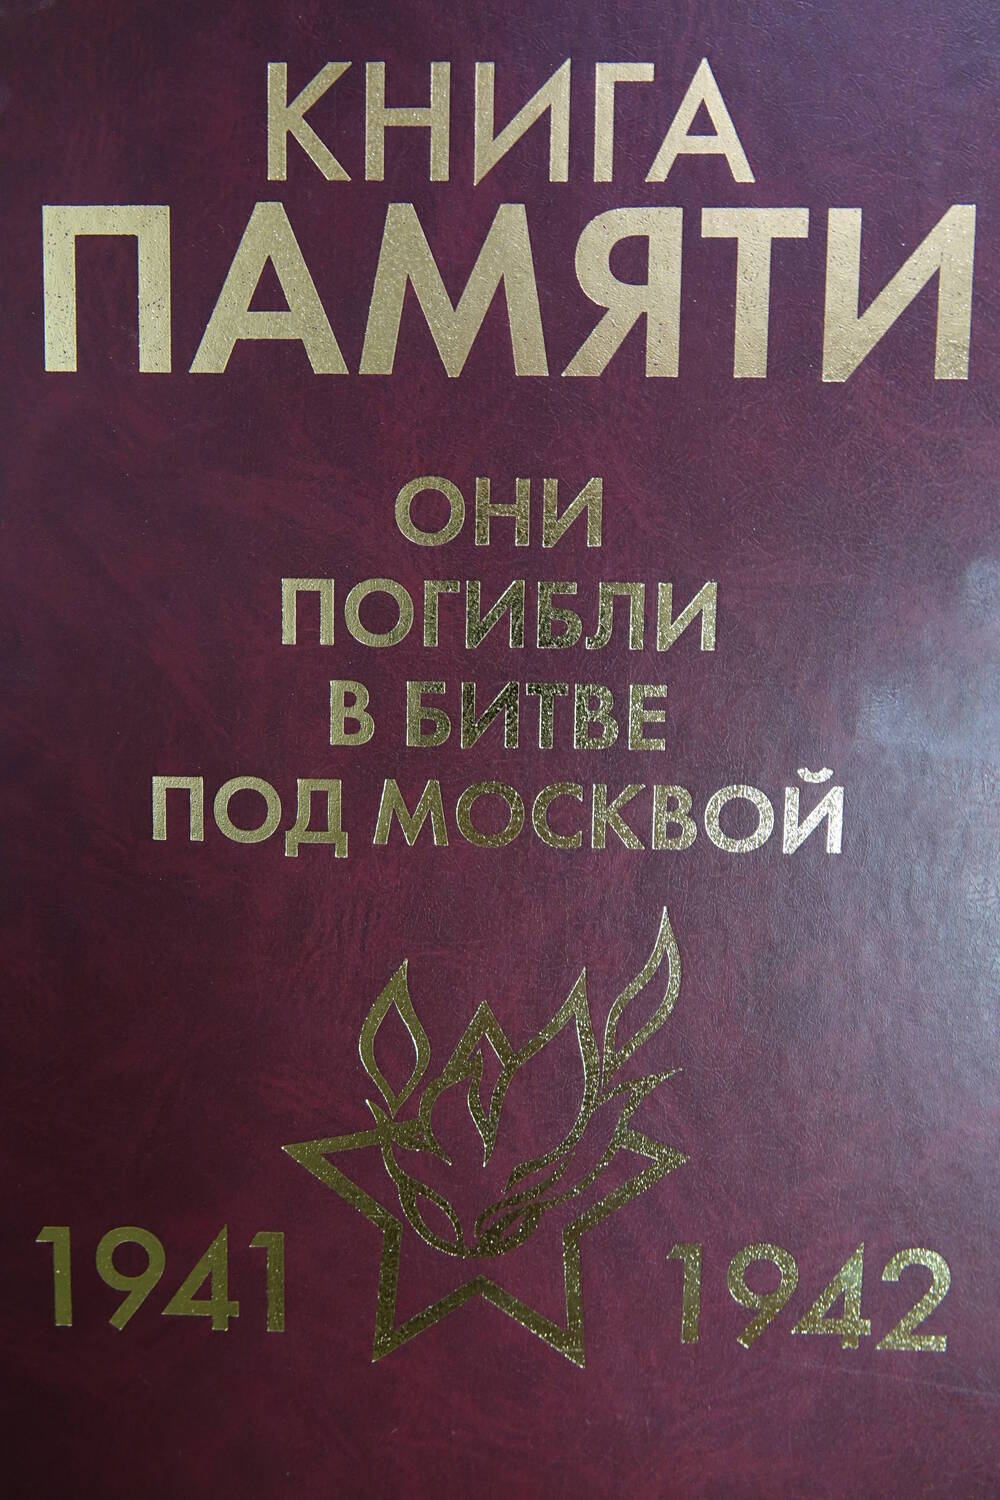 Книга Памяти «Они погибли в битве под Москвой    1941-1942гг.» Том 7  часть I «К»